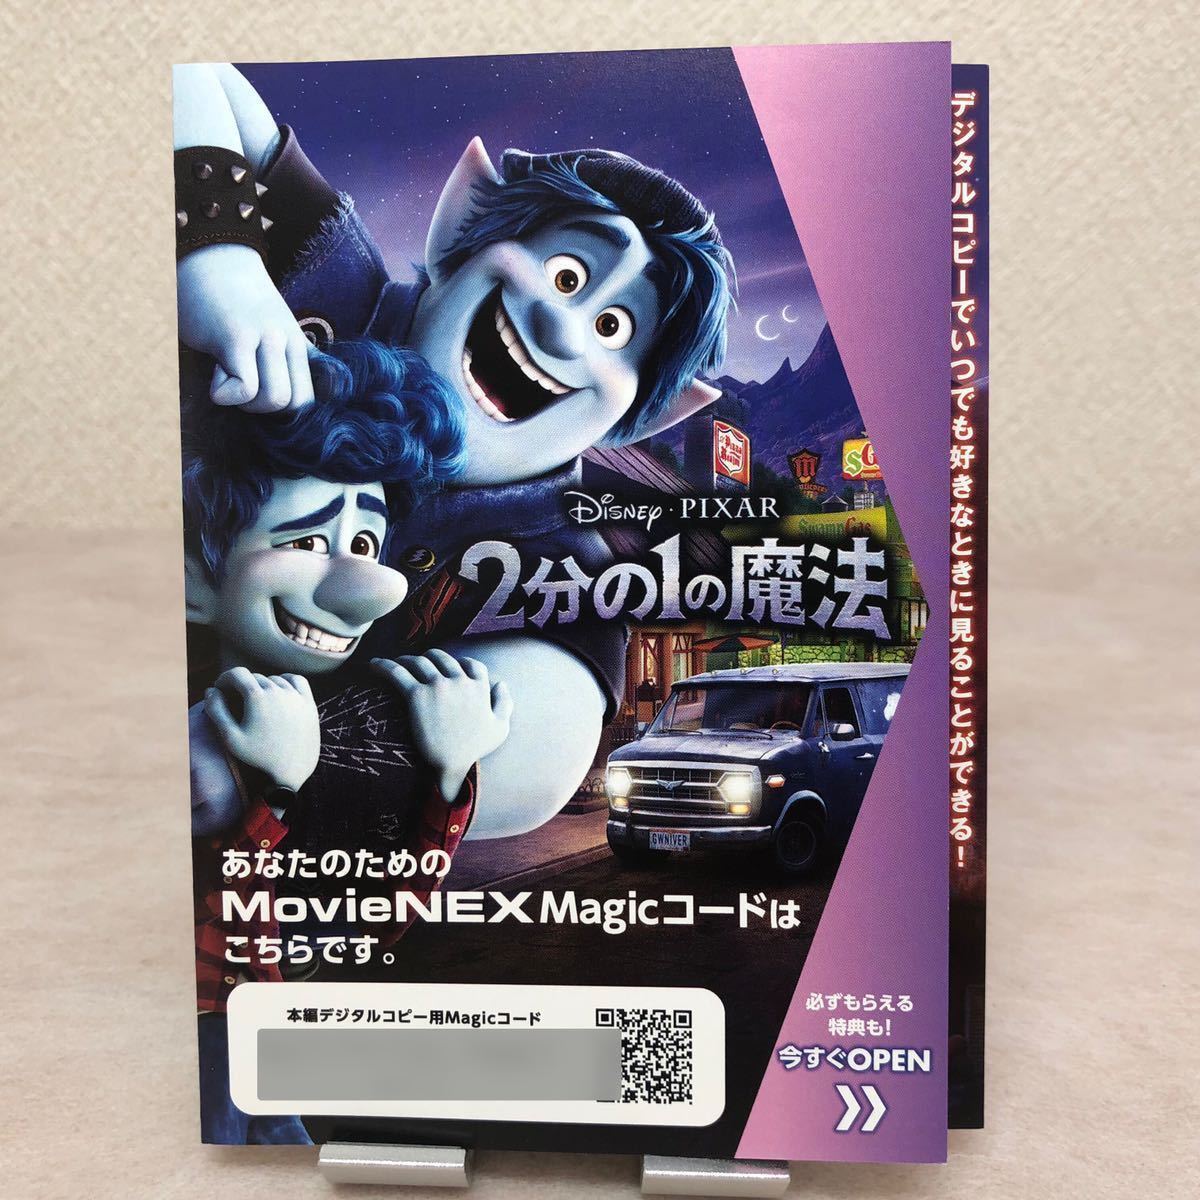 2分の1の魔法 MovieNEX Magicコードのみ（ブルーレイ、DVD等は含みません）マジック・ディズニー・ピクサー・Disney・Pixar